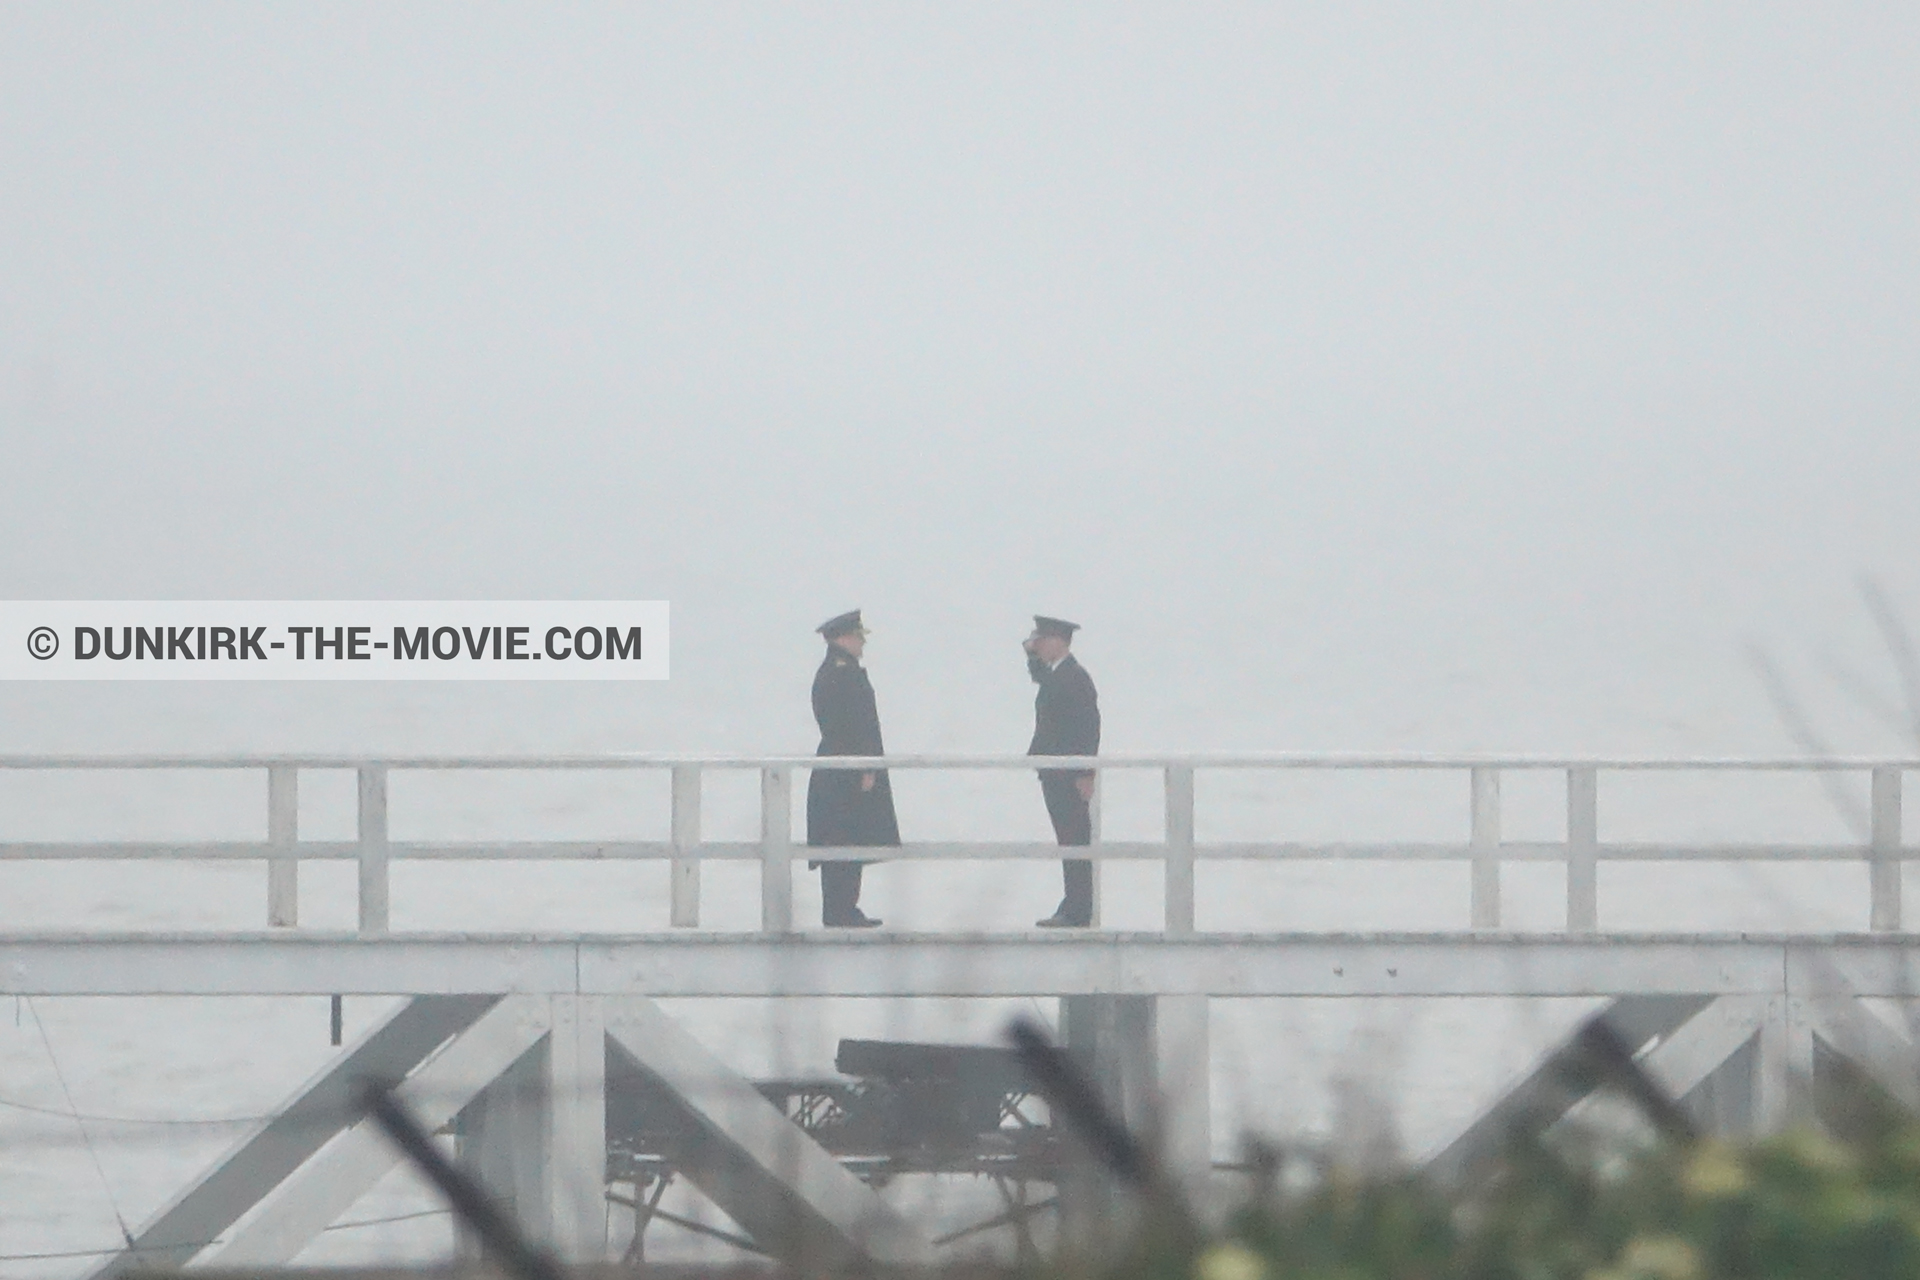 Fotos con actor, cielo gris, muelle del ESTE,  durante el rodaje de la película Dunkerque de Nolan